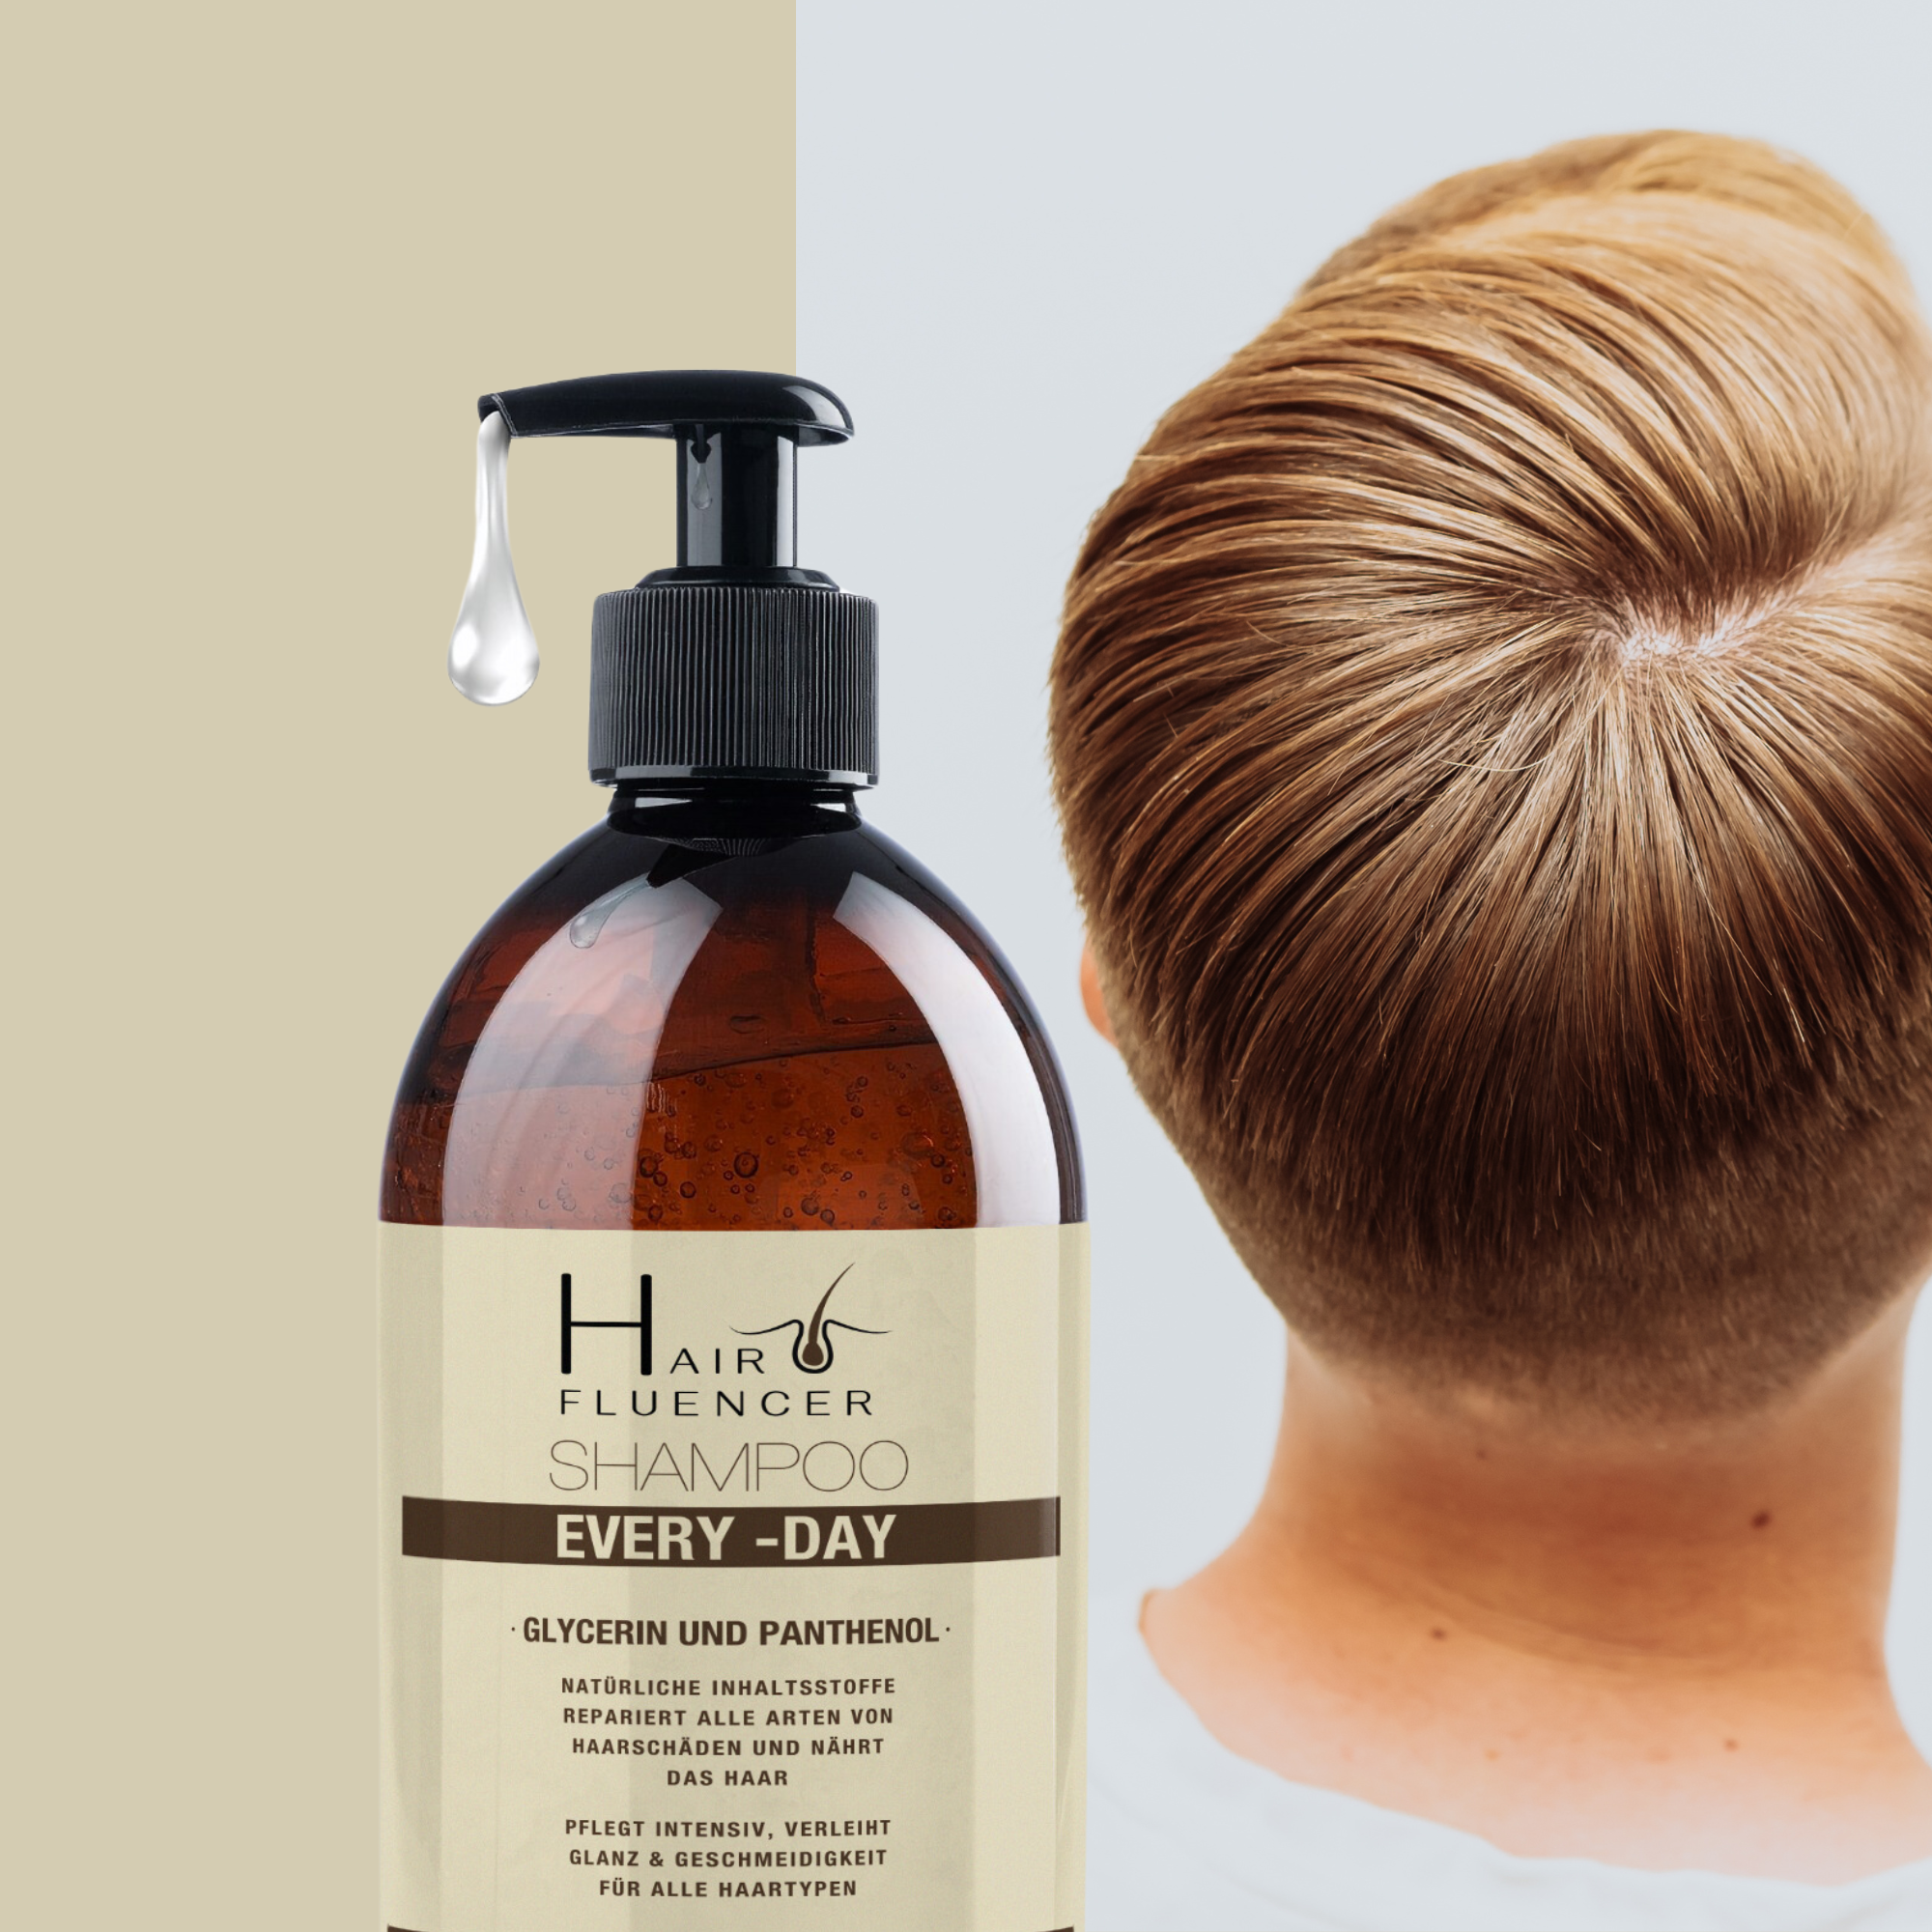 Hairfluencer Every Day Shampoo Natürliche Inhaltsstoffe Repariert alle Arten von HaarschädenpH 5.5 mit Panthenol und Glycerin